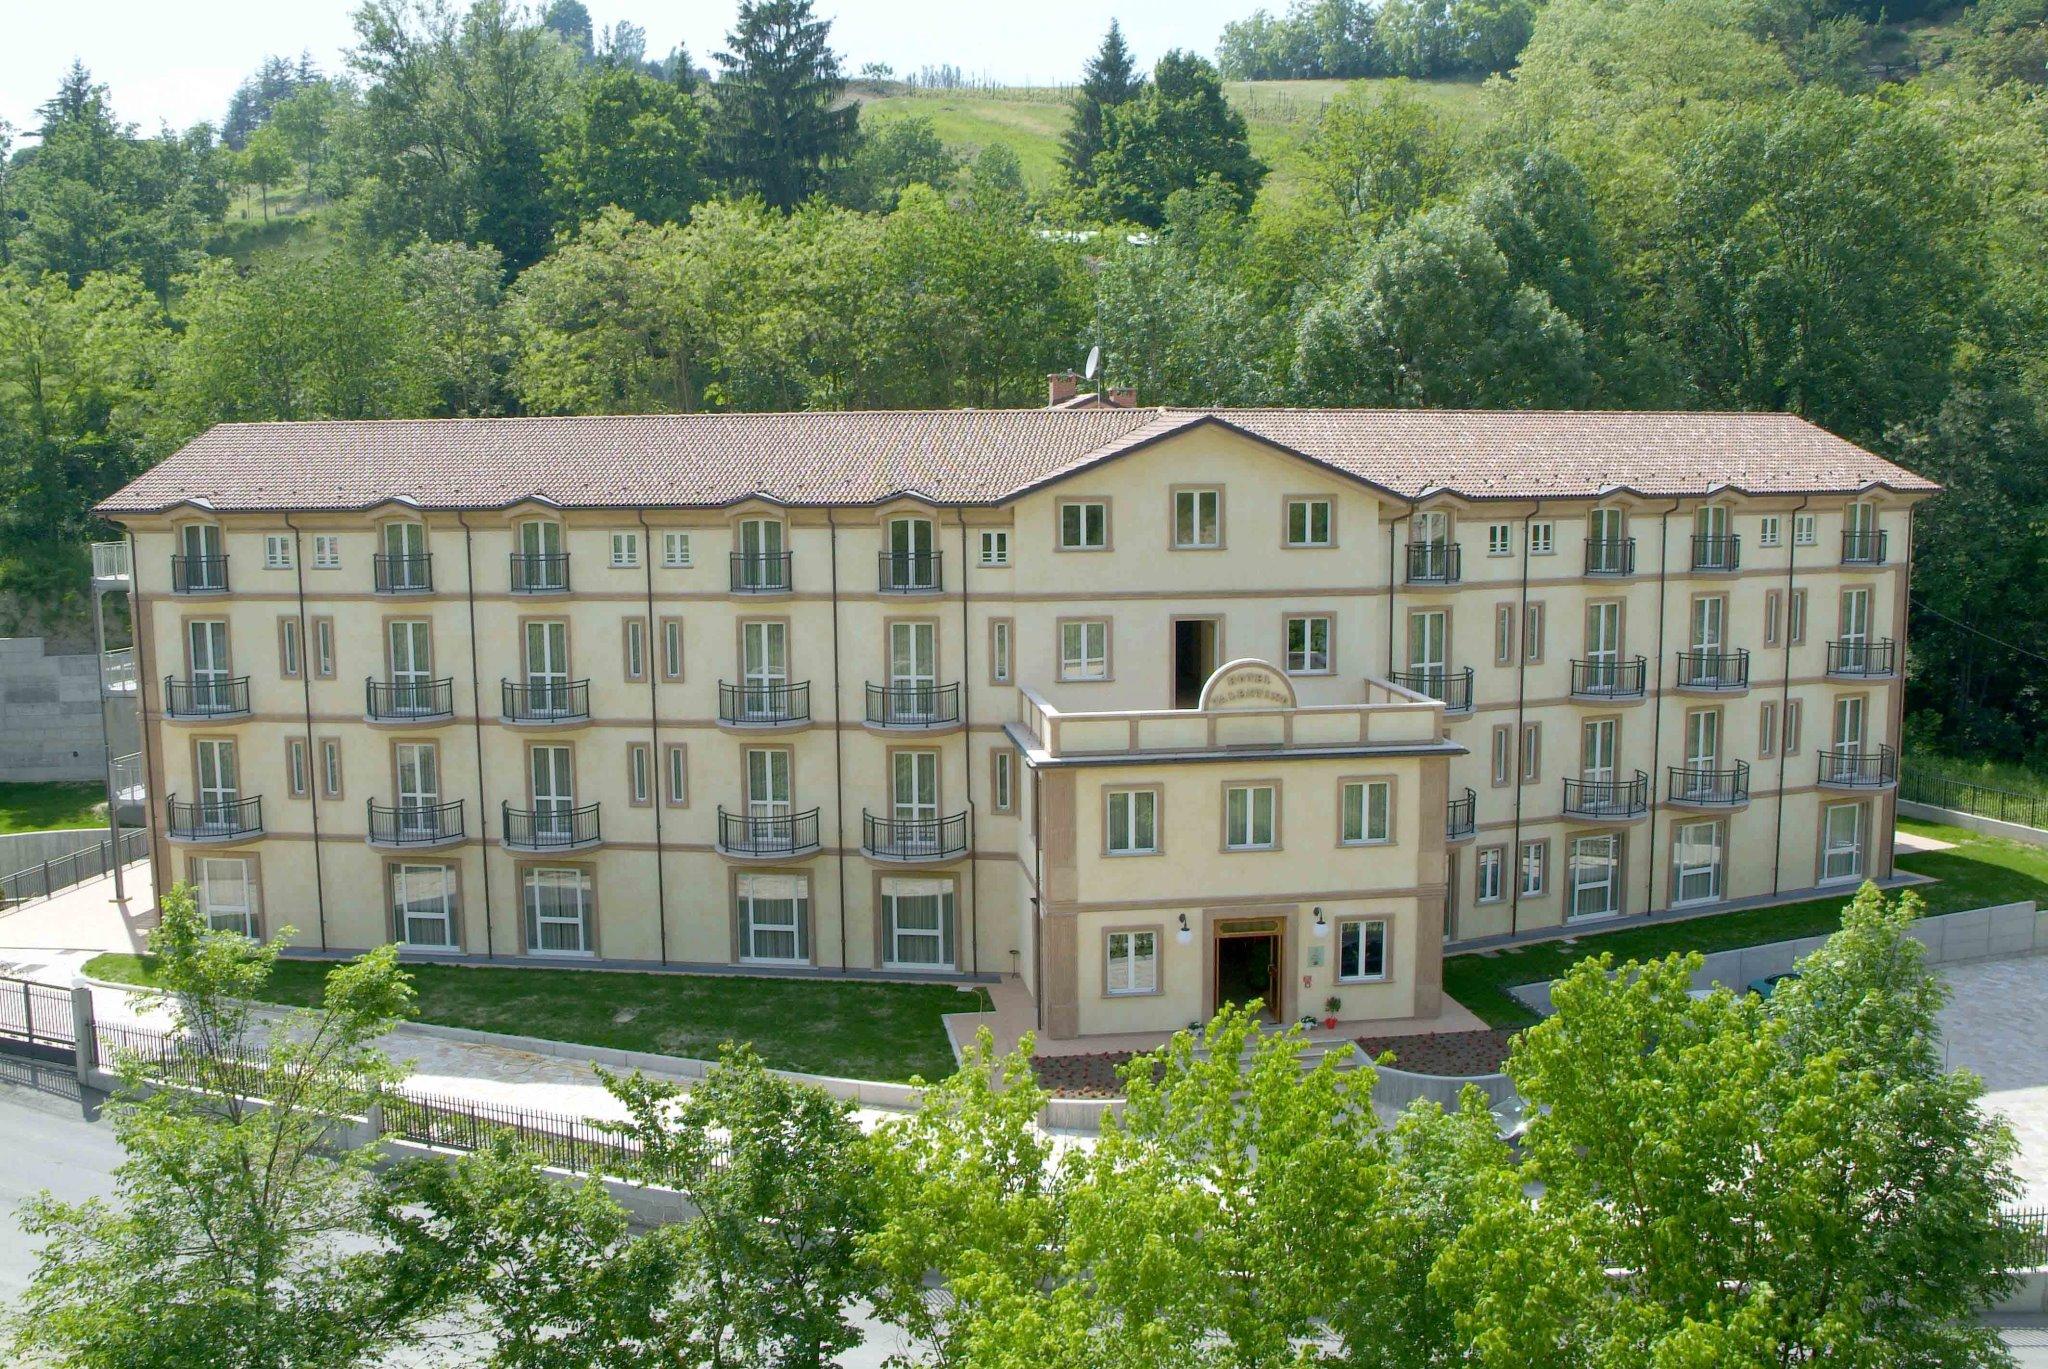 Hotel Valentino Acqui Terme